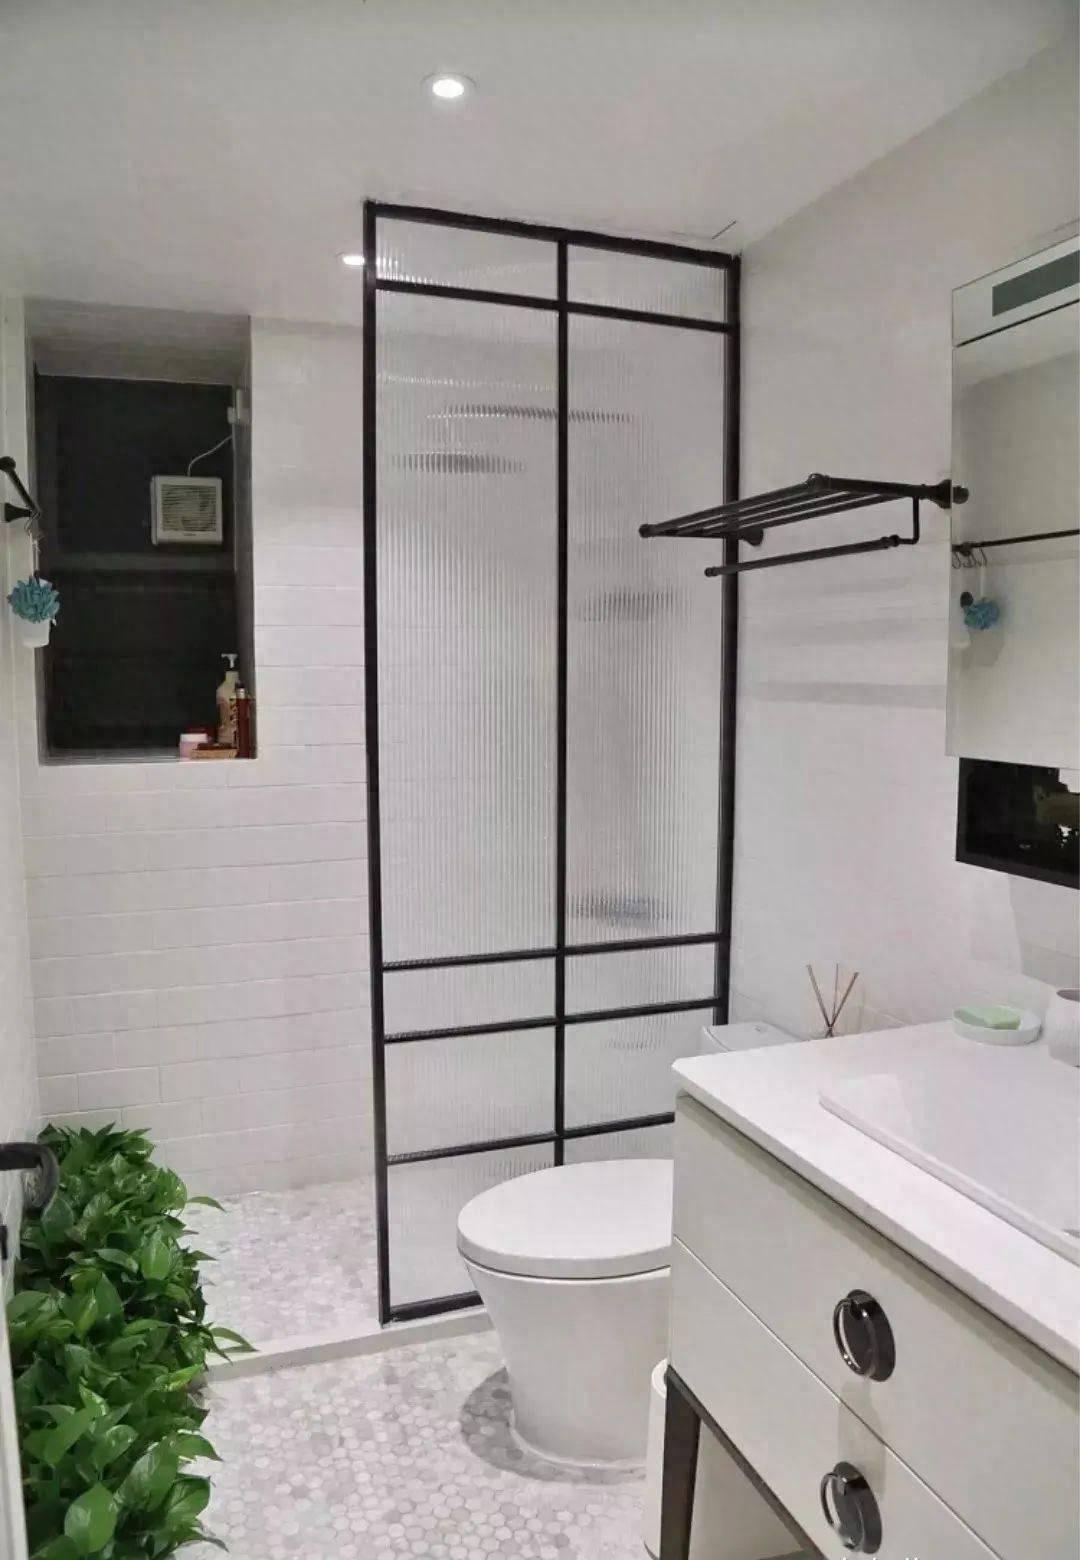 Phòng tắm quá nhỏ, làm sao để bạn có thể tách biệt khu khô và ướt? 4 thiết kế dưới đây sẽ giúp bạn- Ảnh 1.